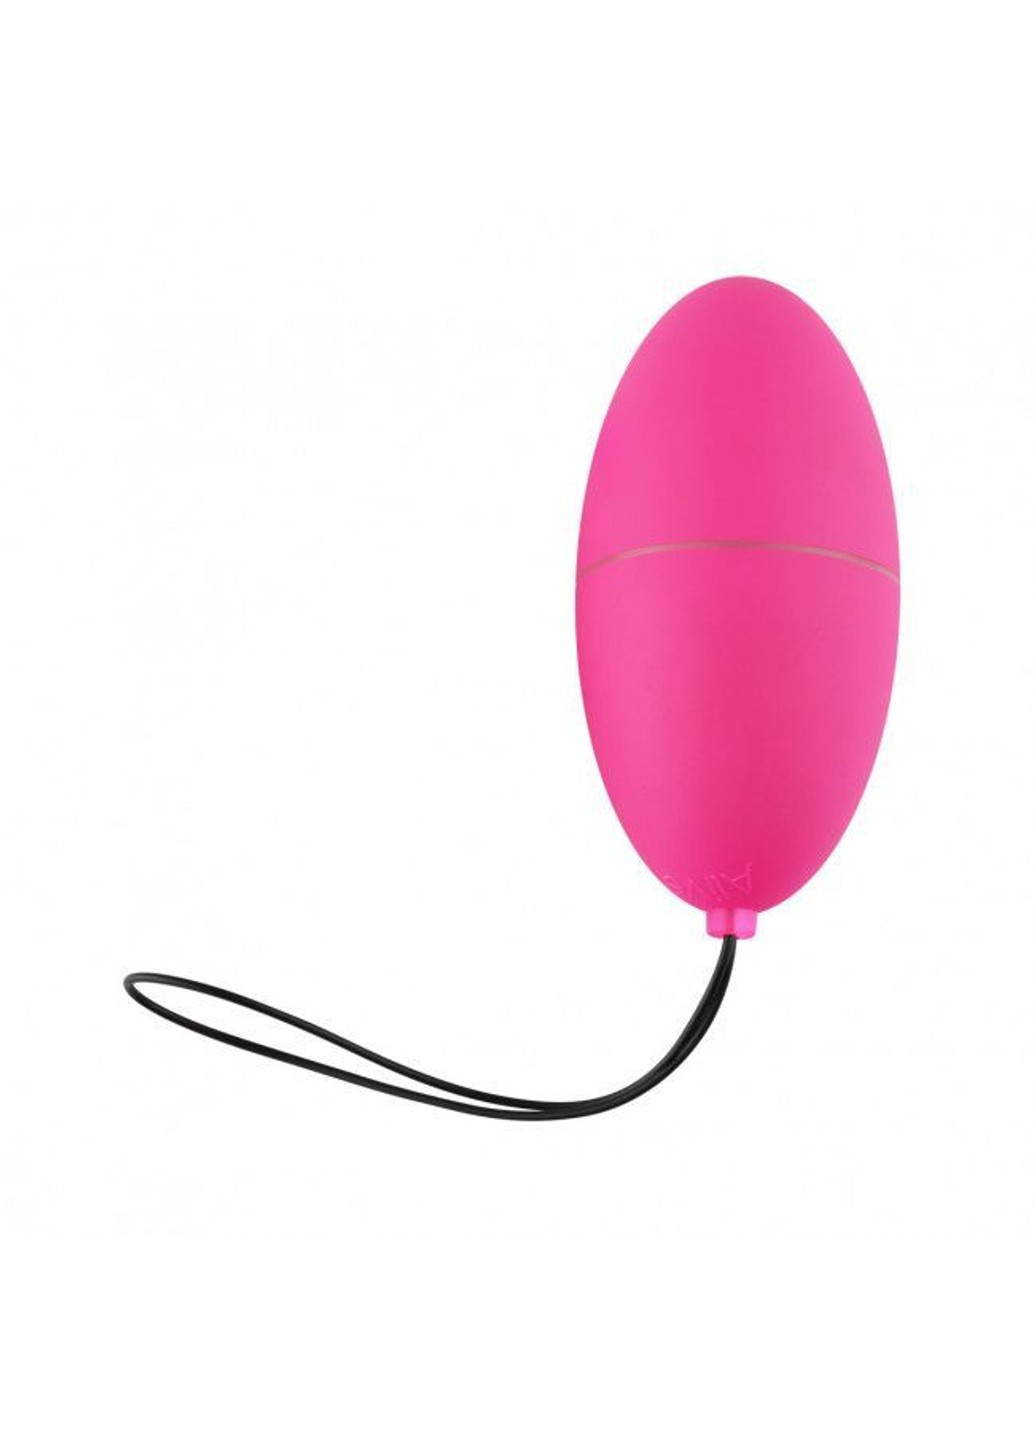 Виброяйцо Magic Egg 3.0 Pink с пультом ДУ, на батарейках Alive (276388923)